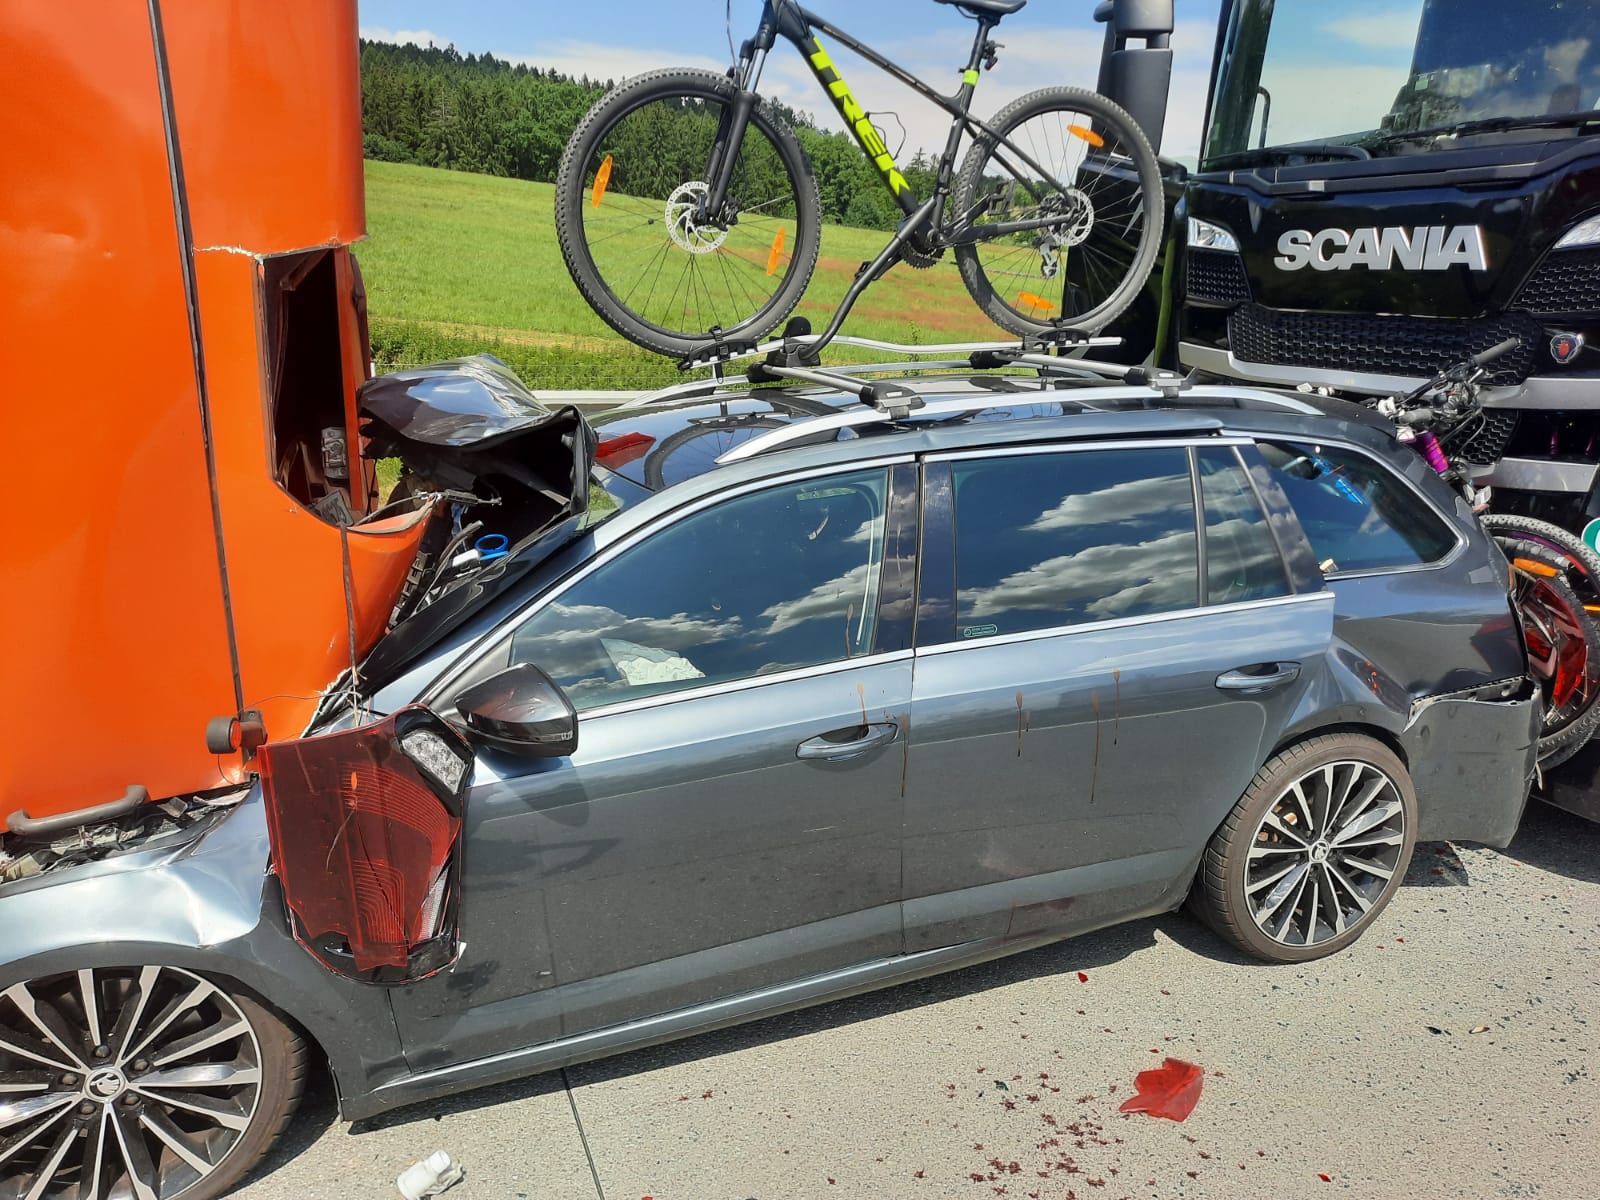 052 - Tragická nehoda na brněnské dálnici u Ostředku na Benešovsku.jpg